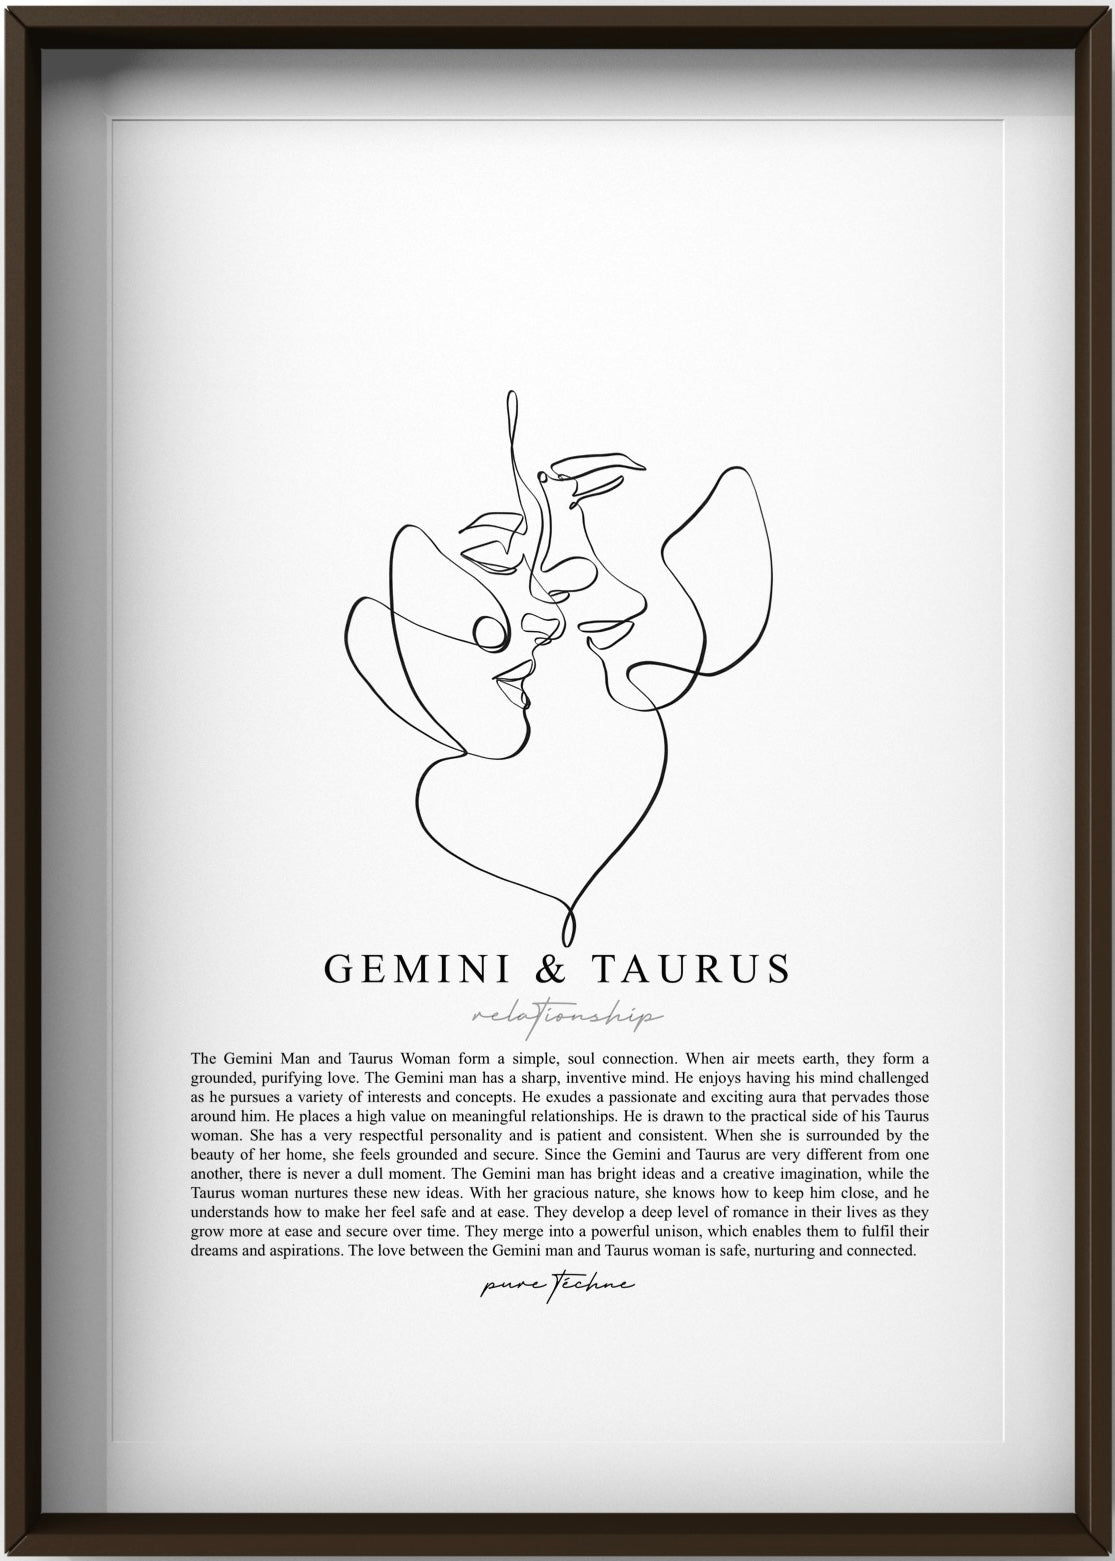 Gemini Man & Taurus Woman